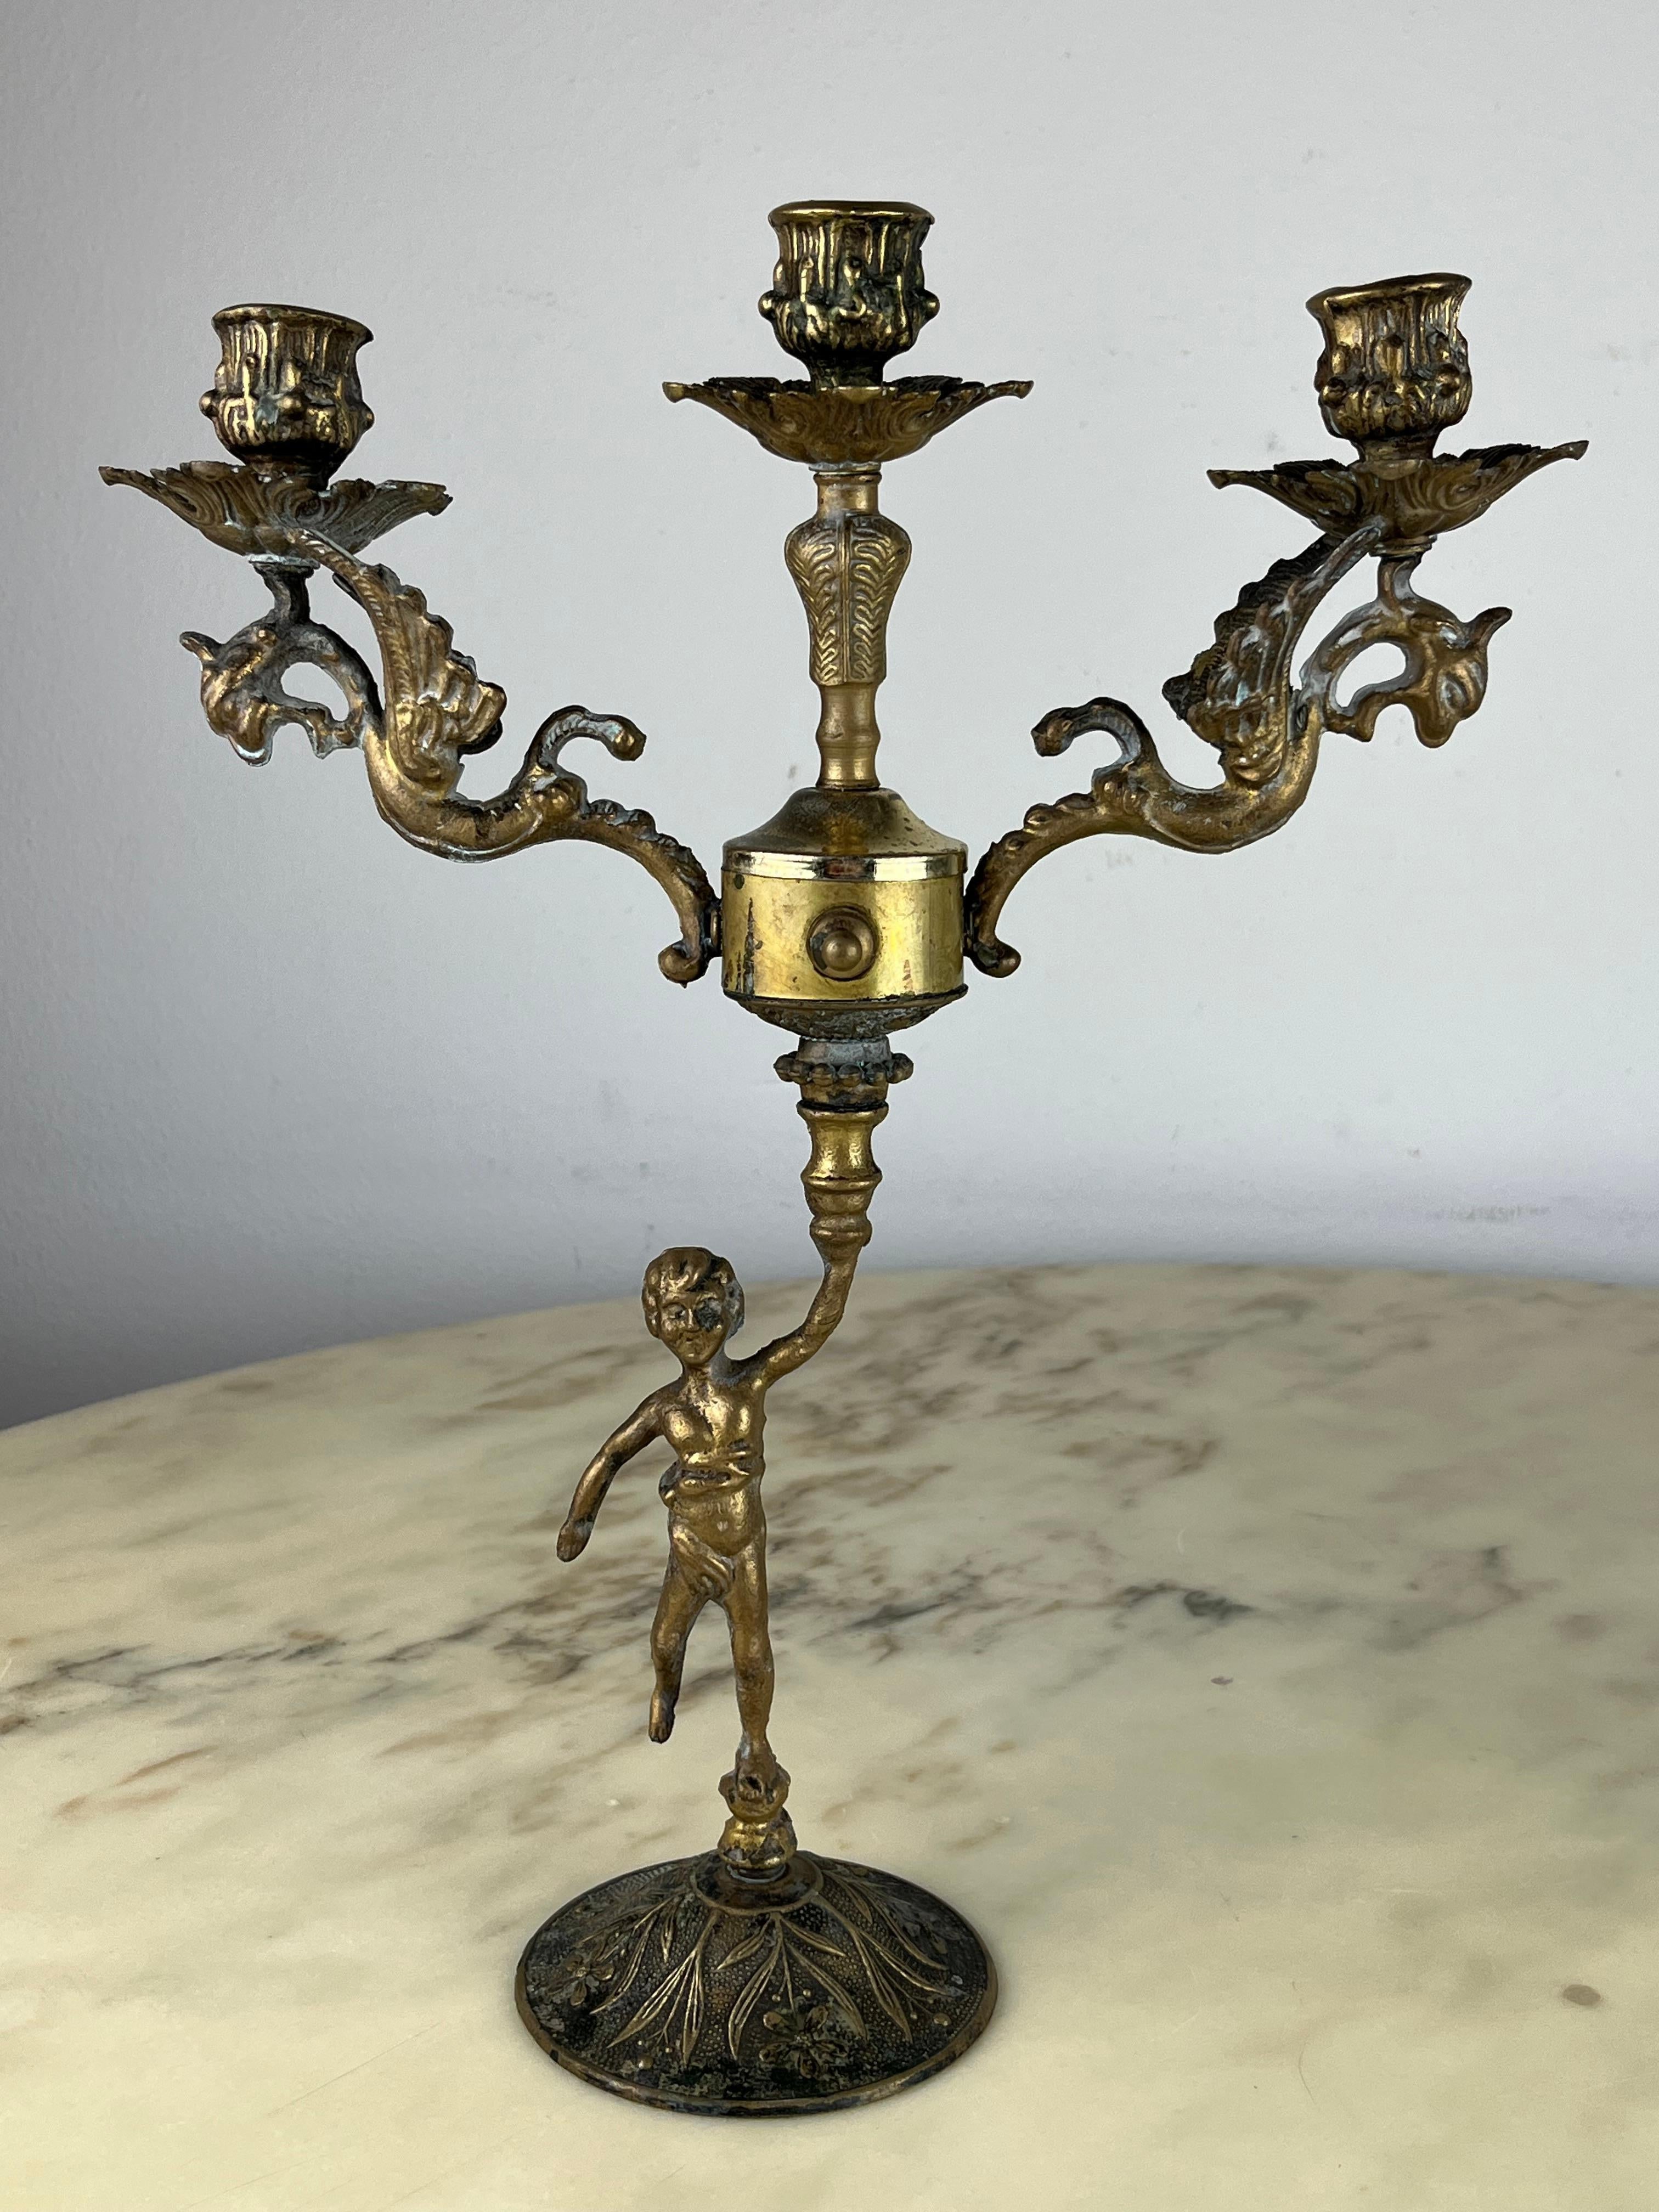 Paire de chandeliers italiens en bronze, années 1960
Trouvées dans un appartement noble, elles sont intactes et en bon état.
Petits signes de vieillissement.